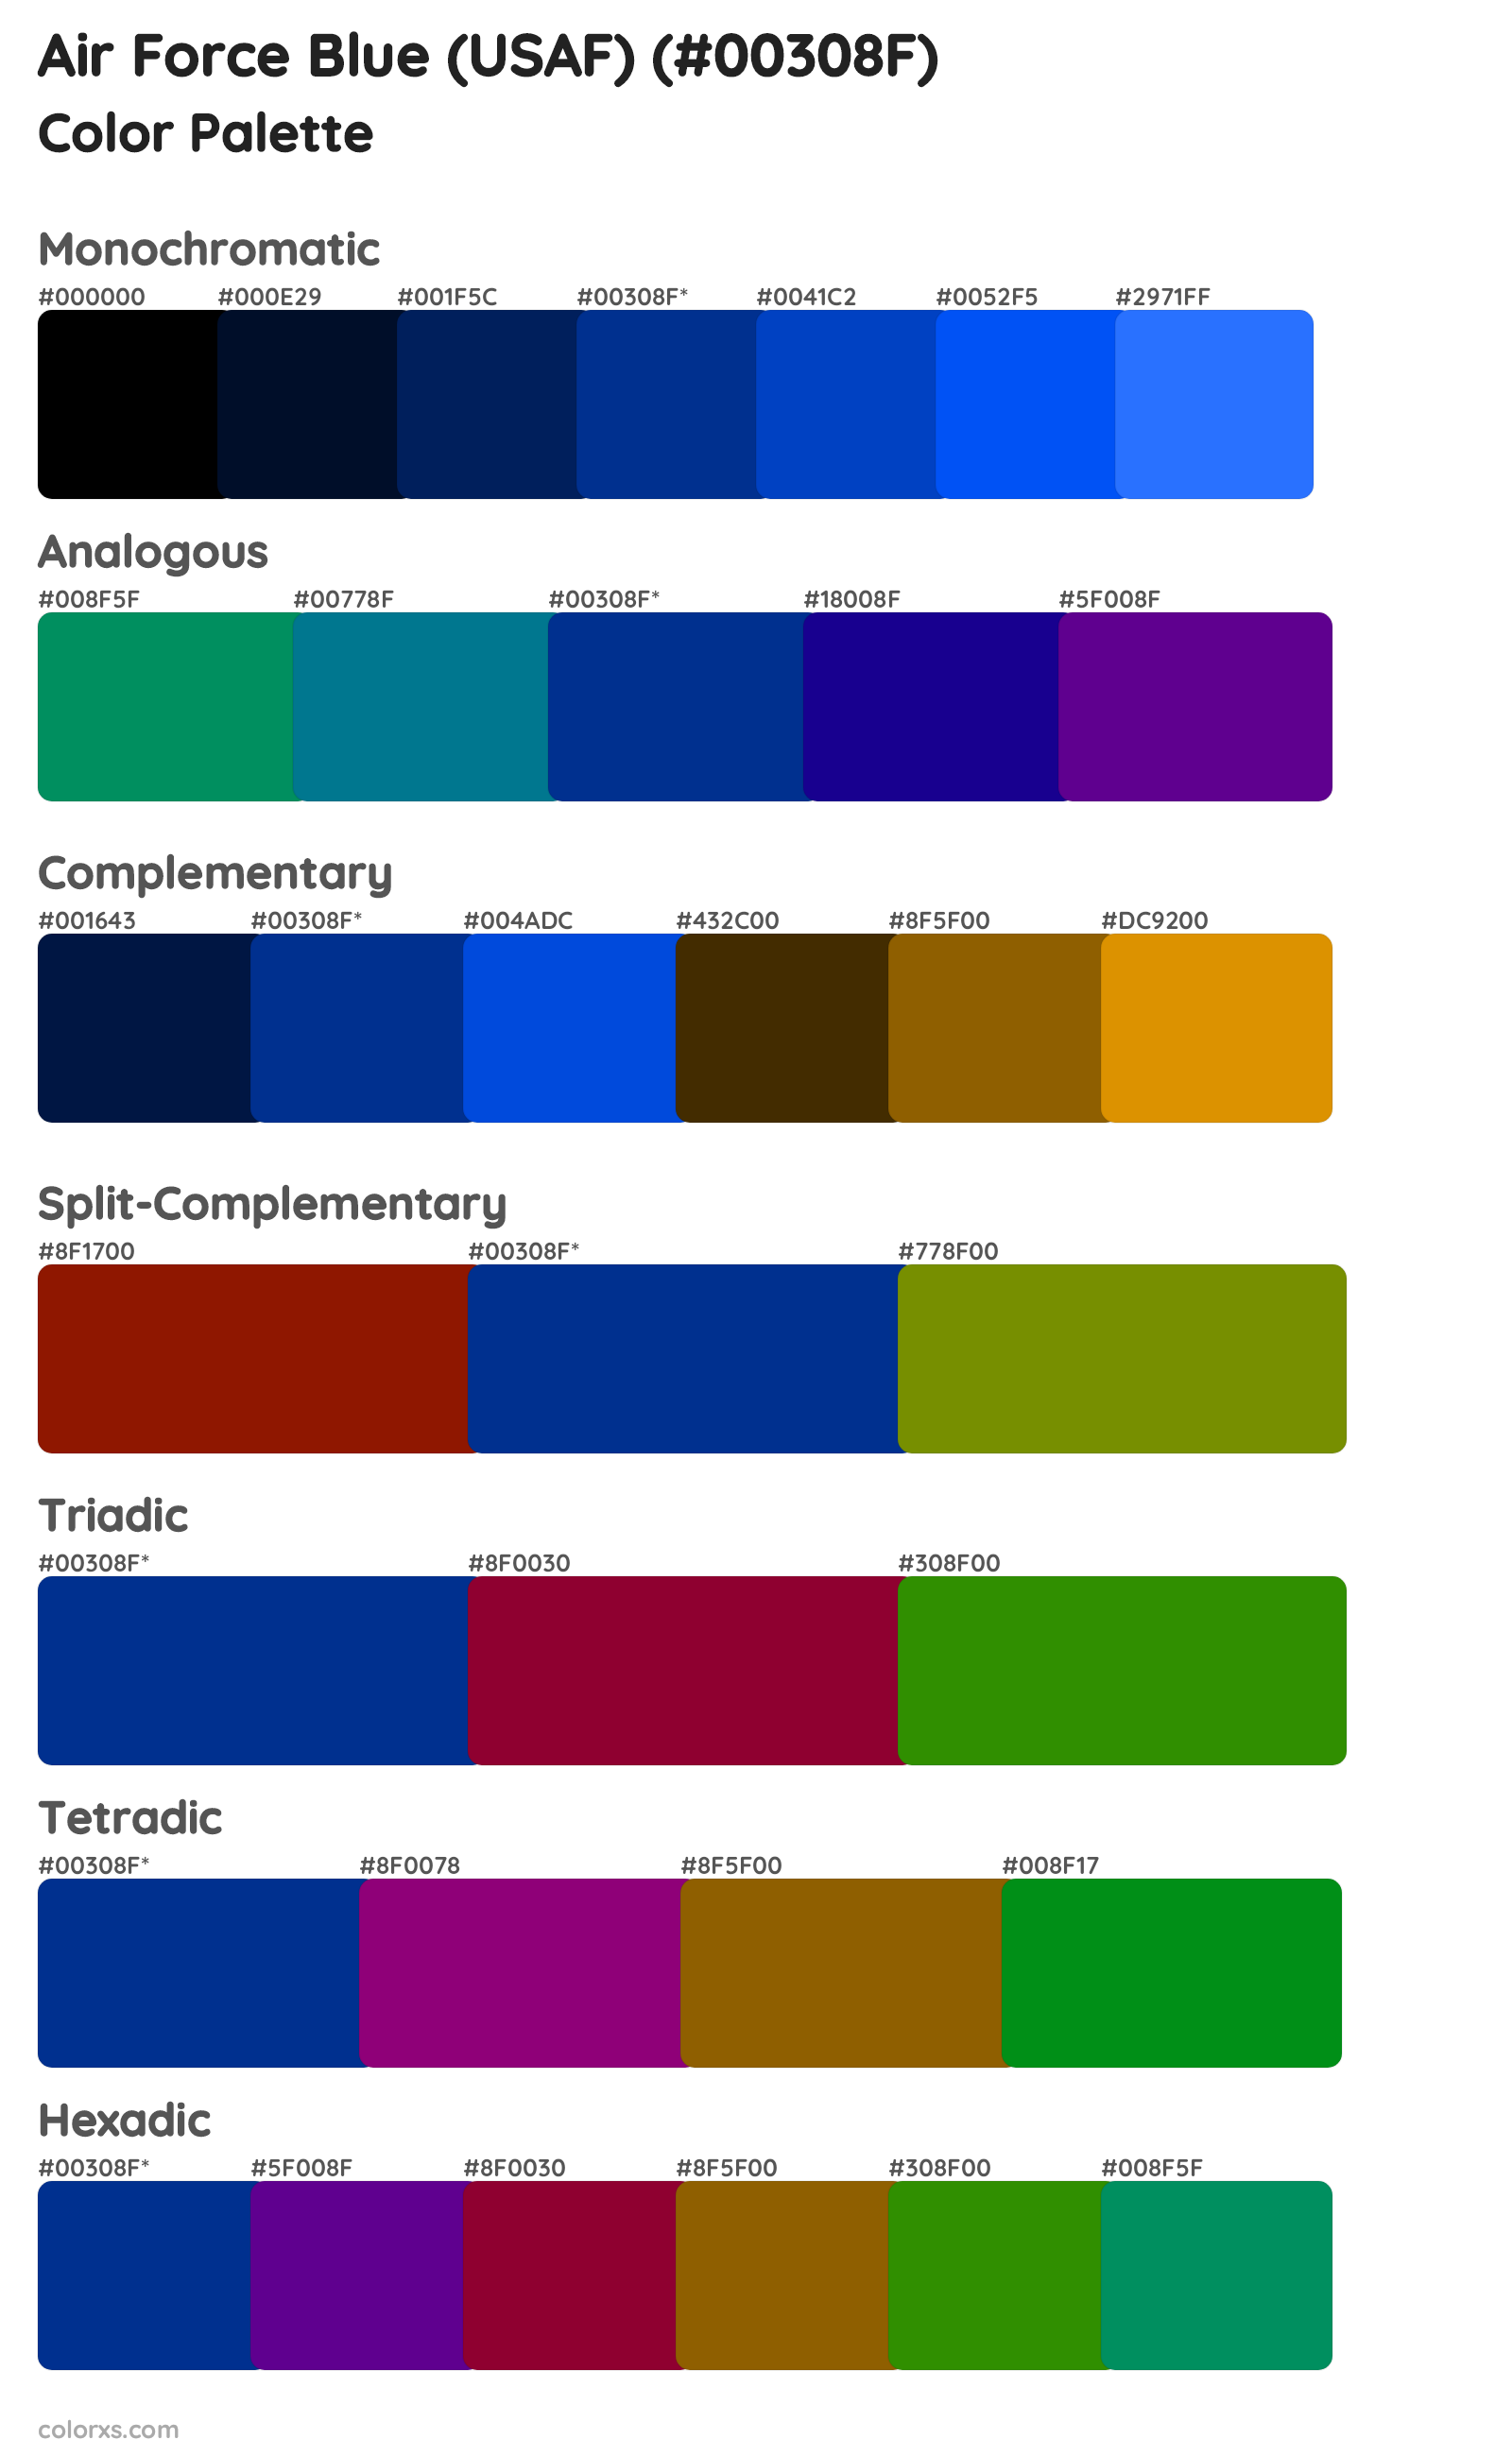 Air Force Blue (USAF) Color Scheme Palettes